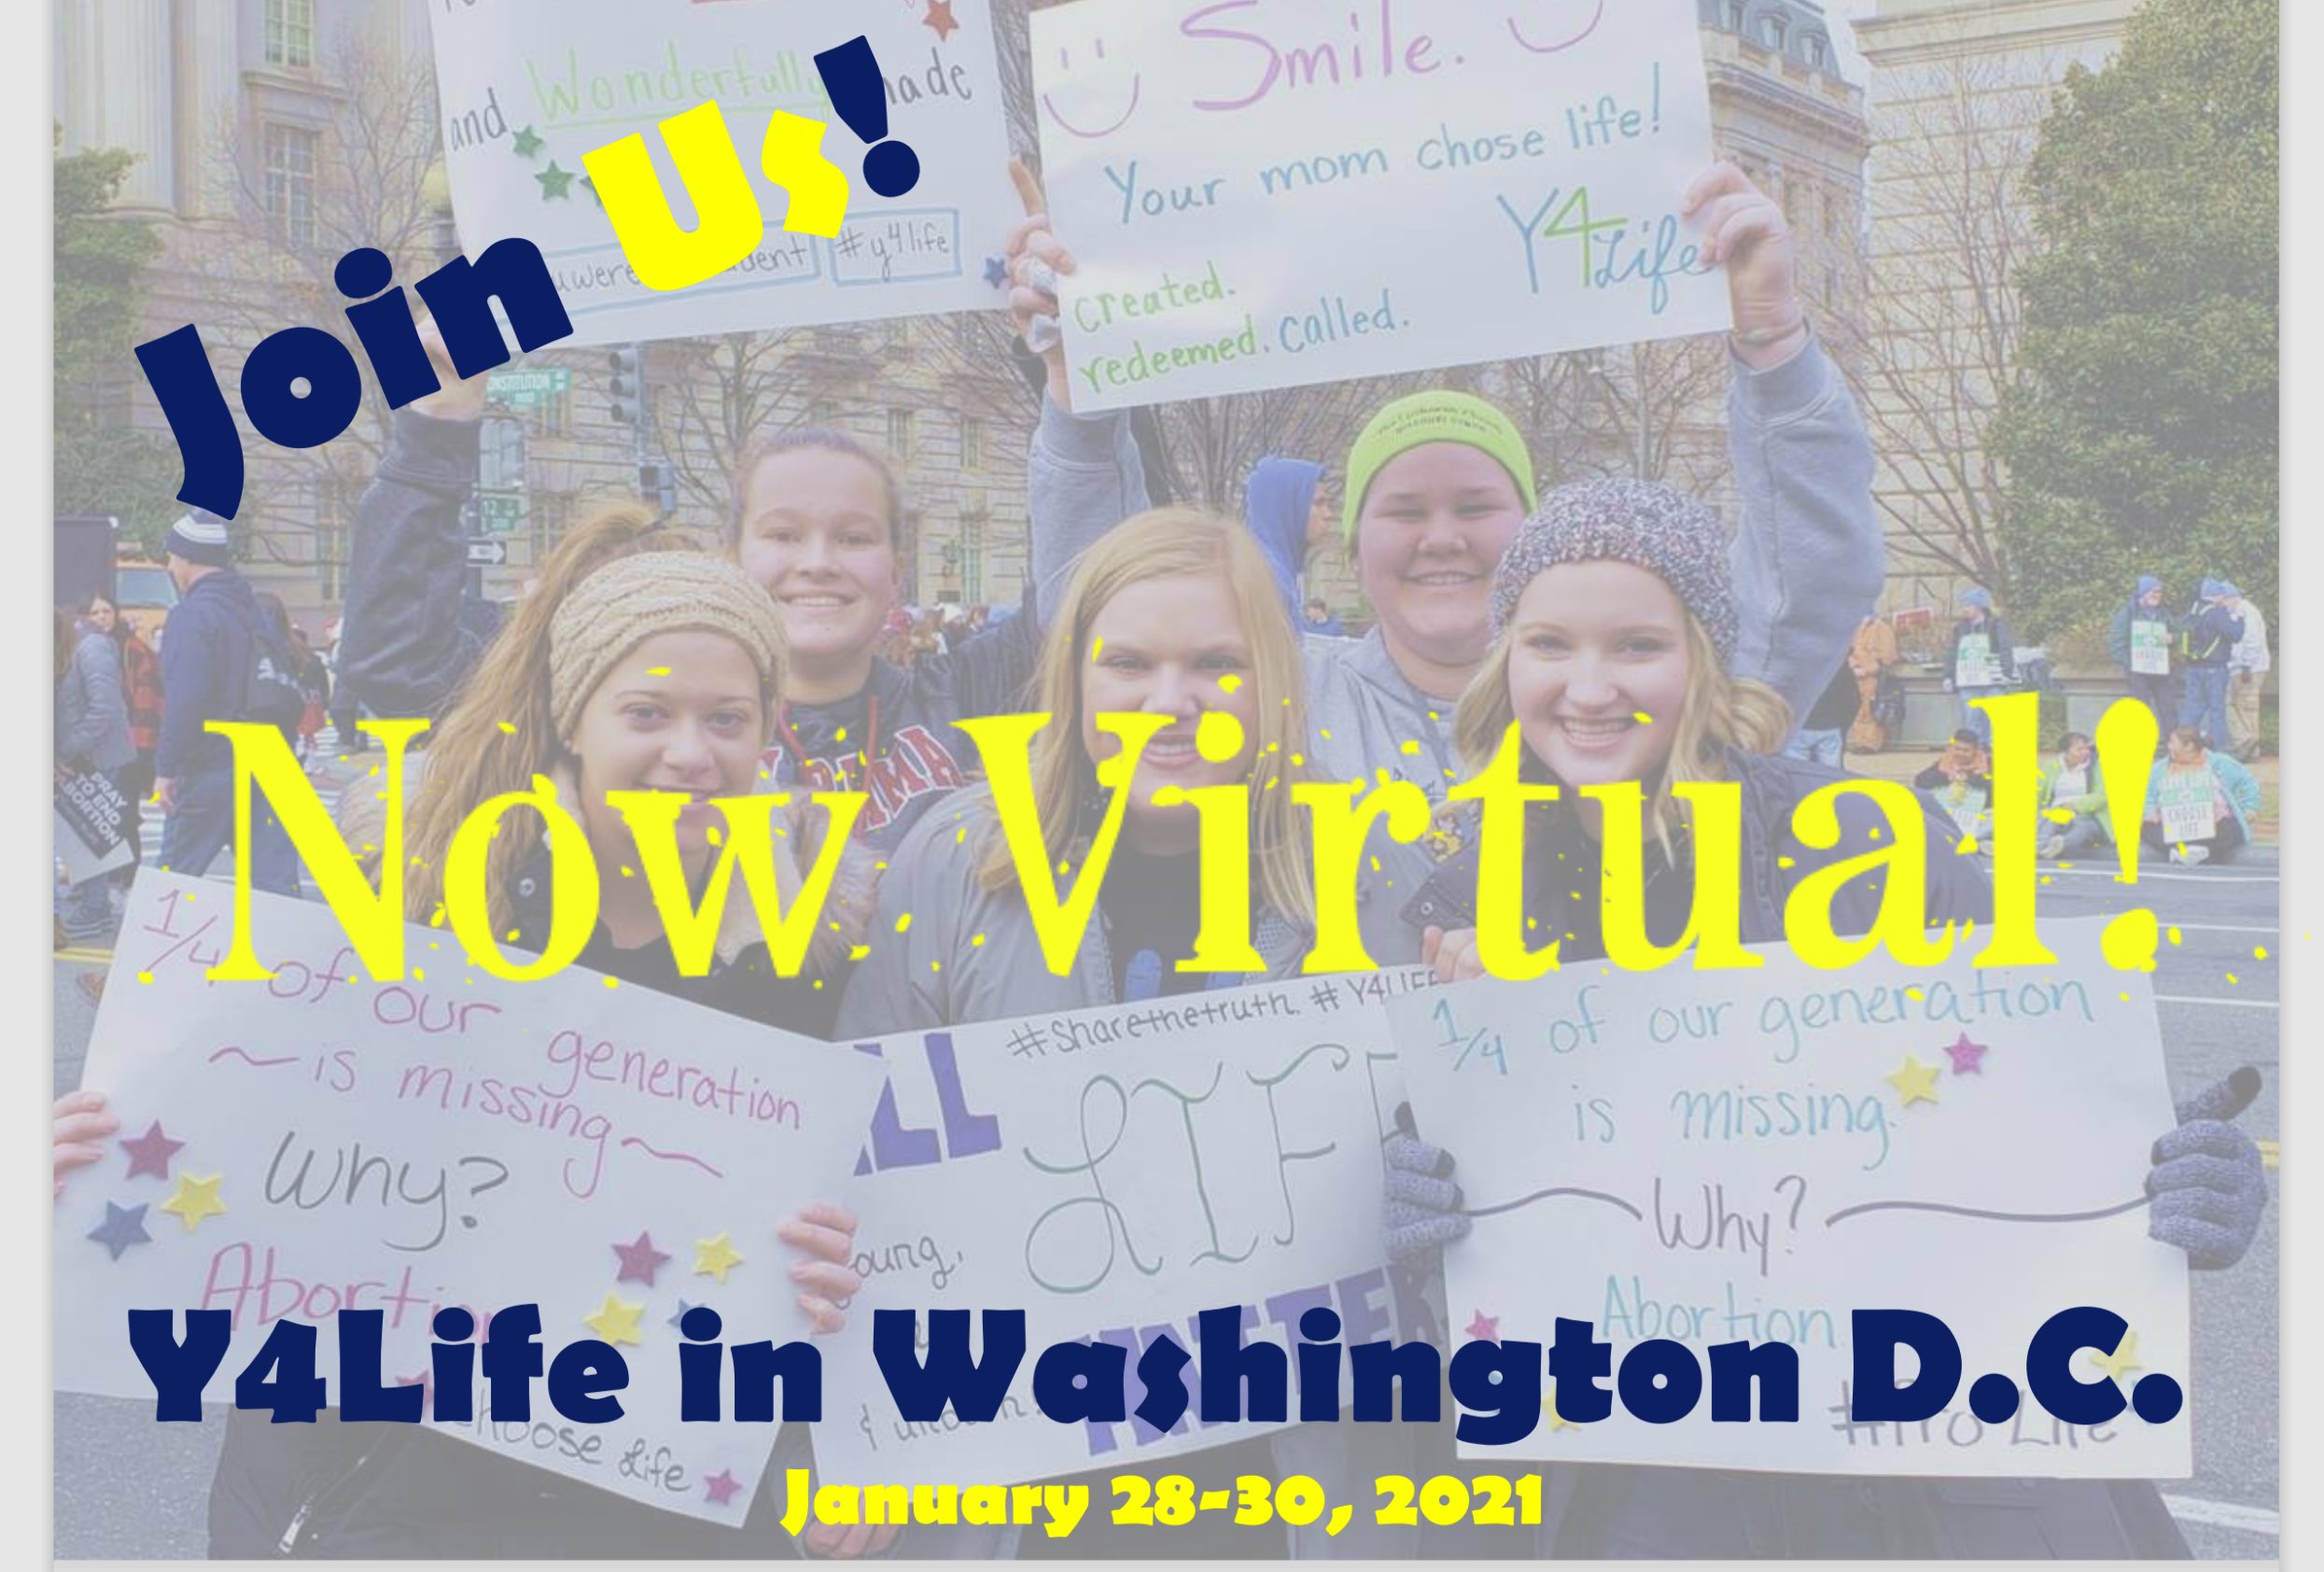 Life Week 2021 - Day 6 - Y4Life in Washington, D.C ...